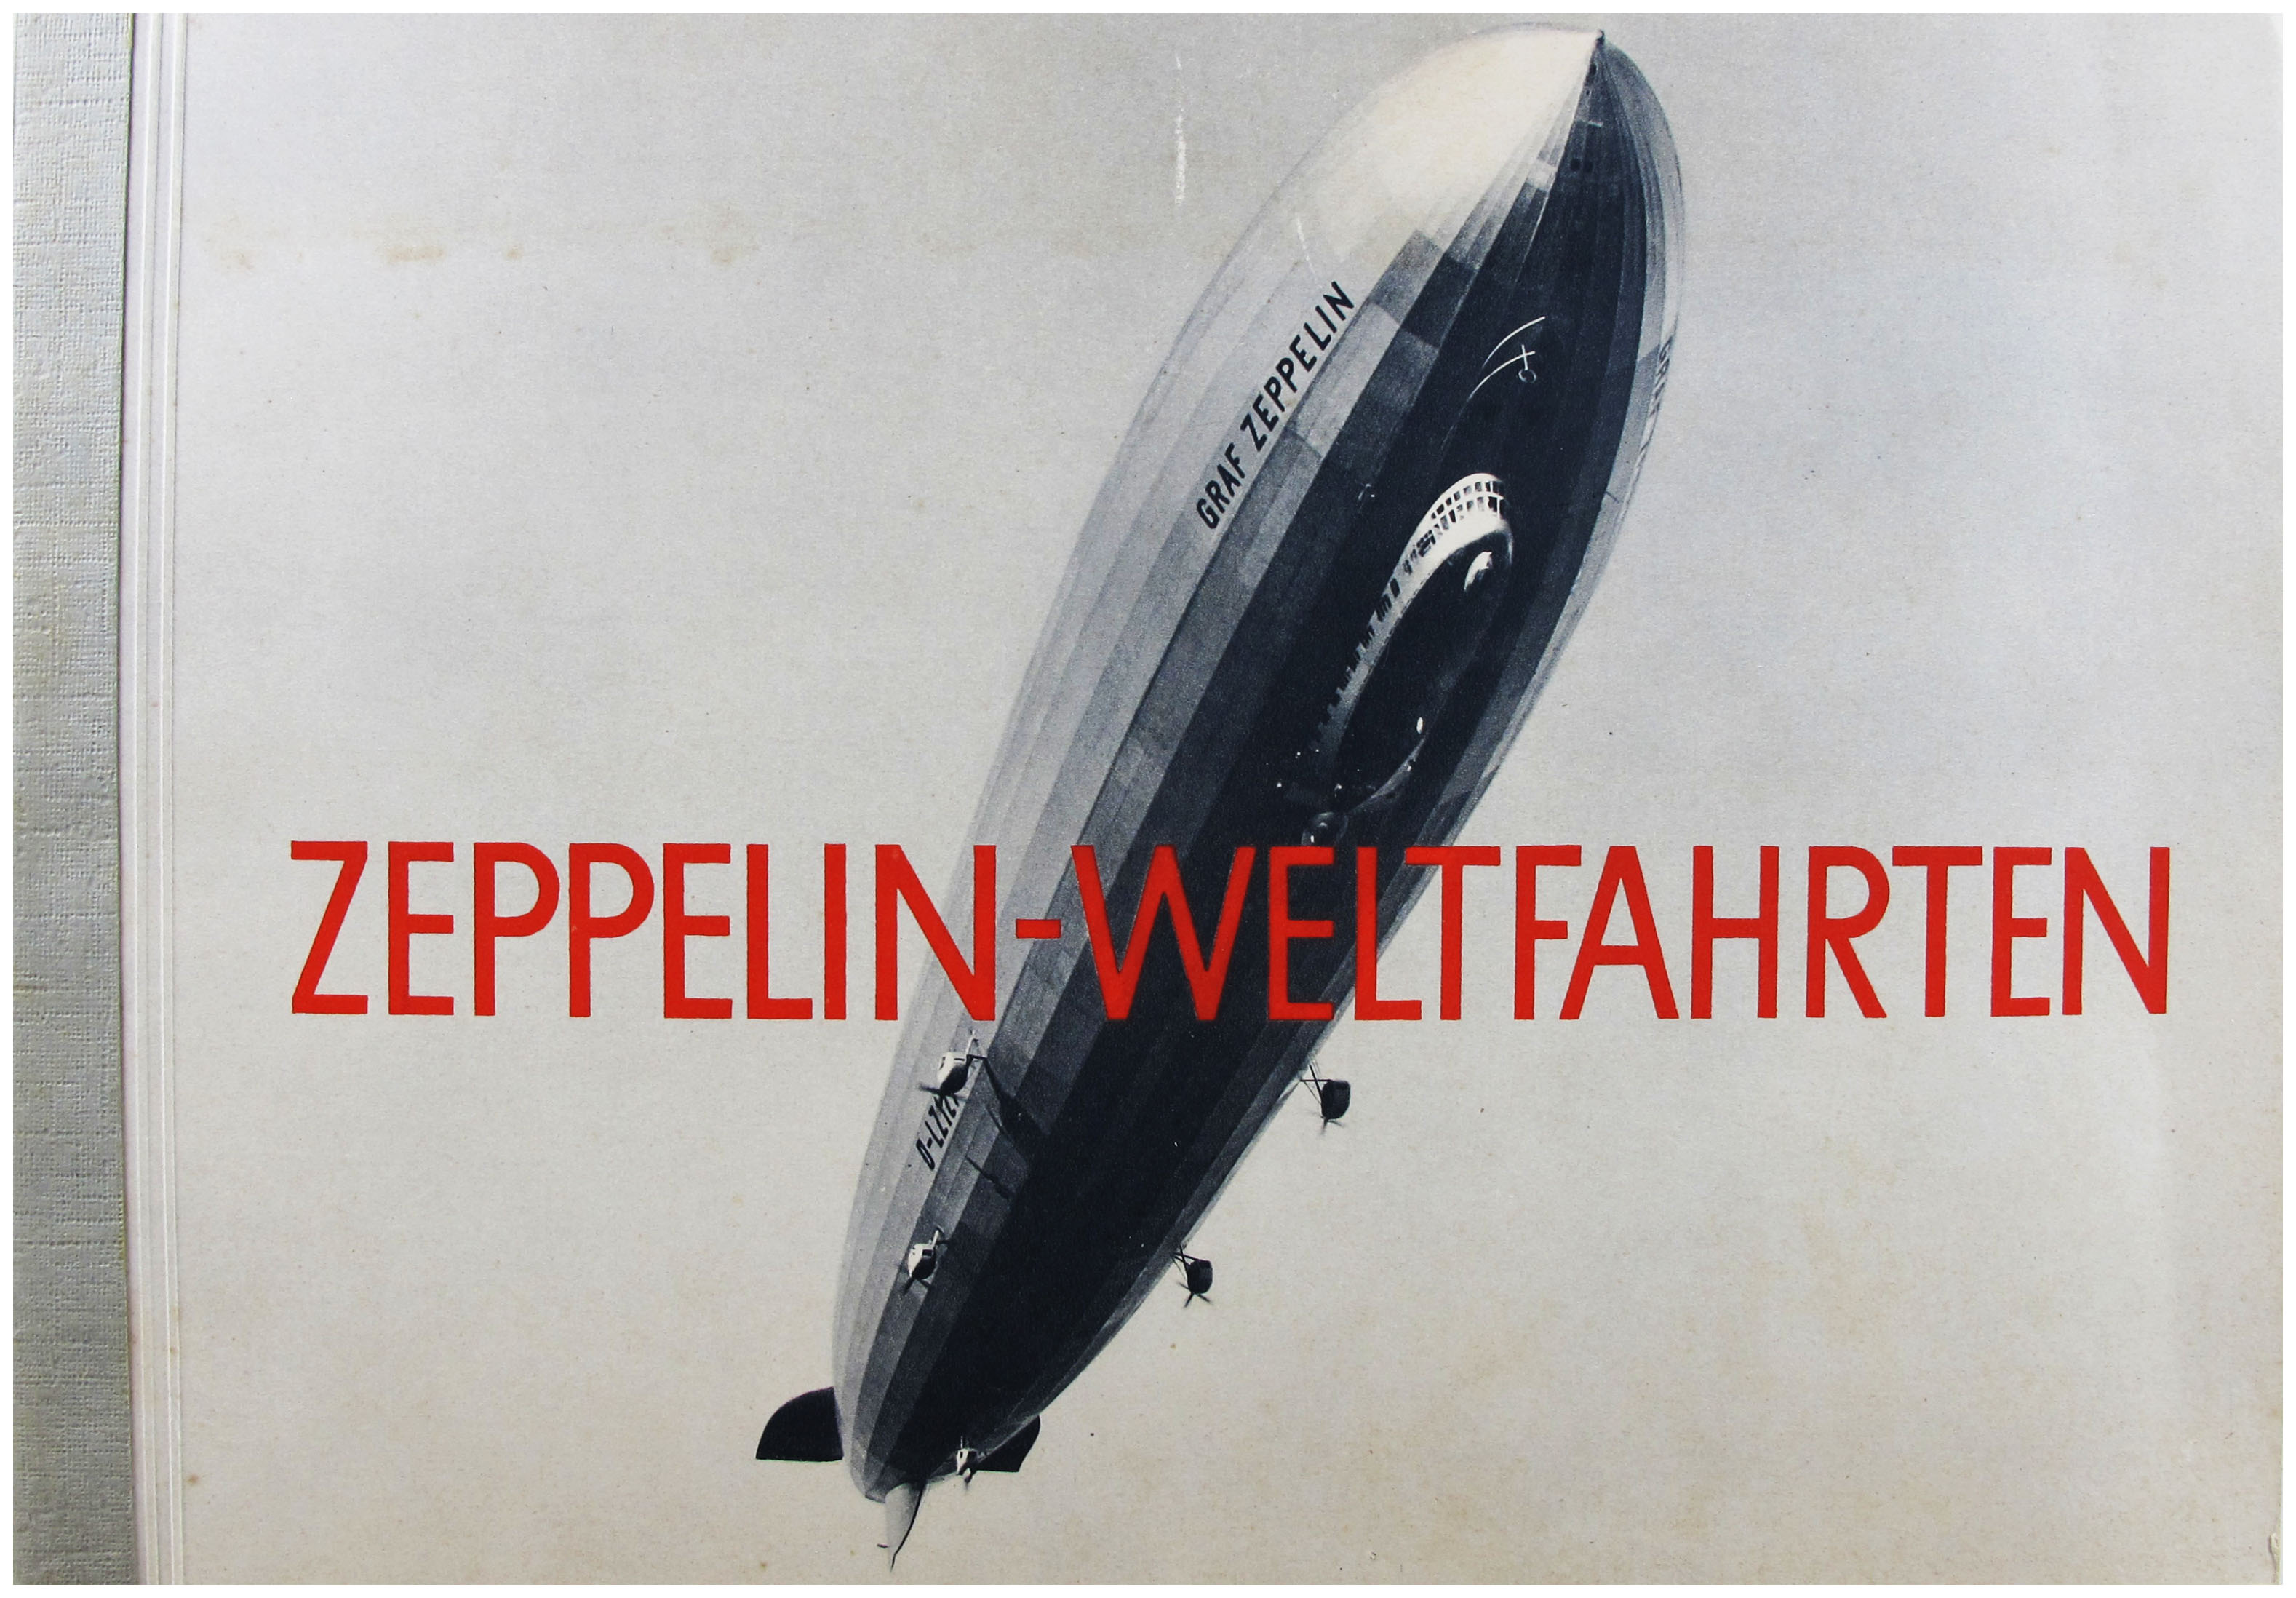 Zeppelin-Weltfahrten 1 Bild aussuchen 